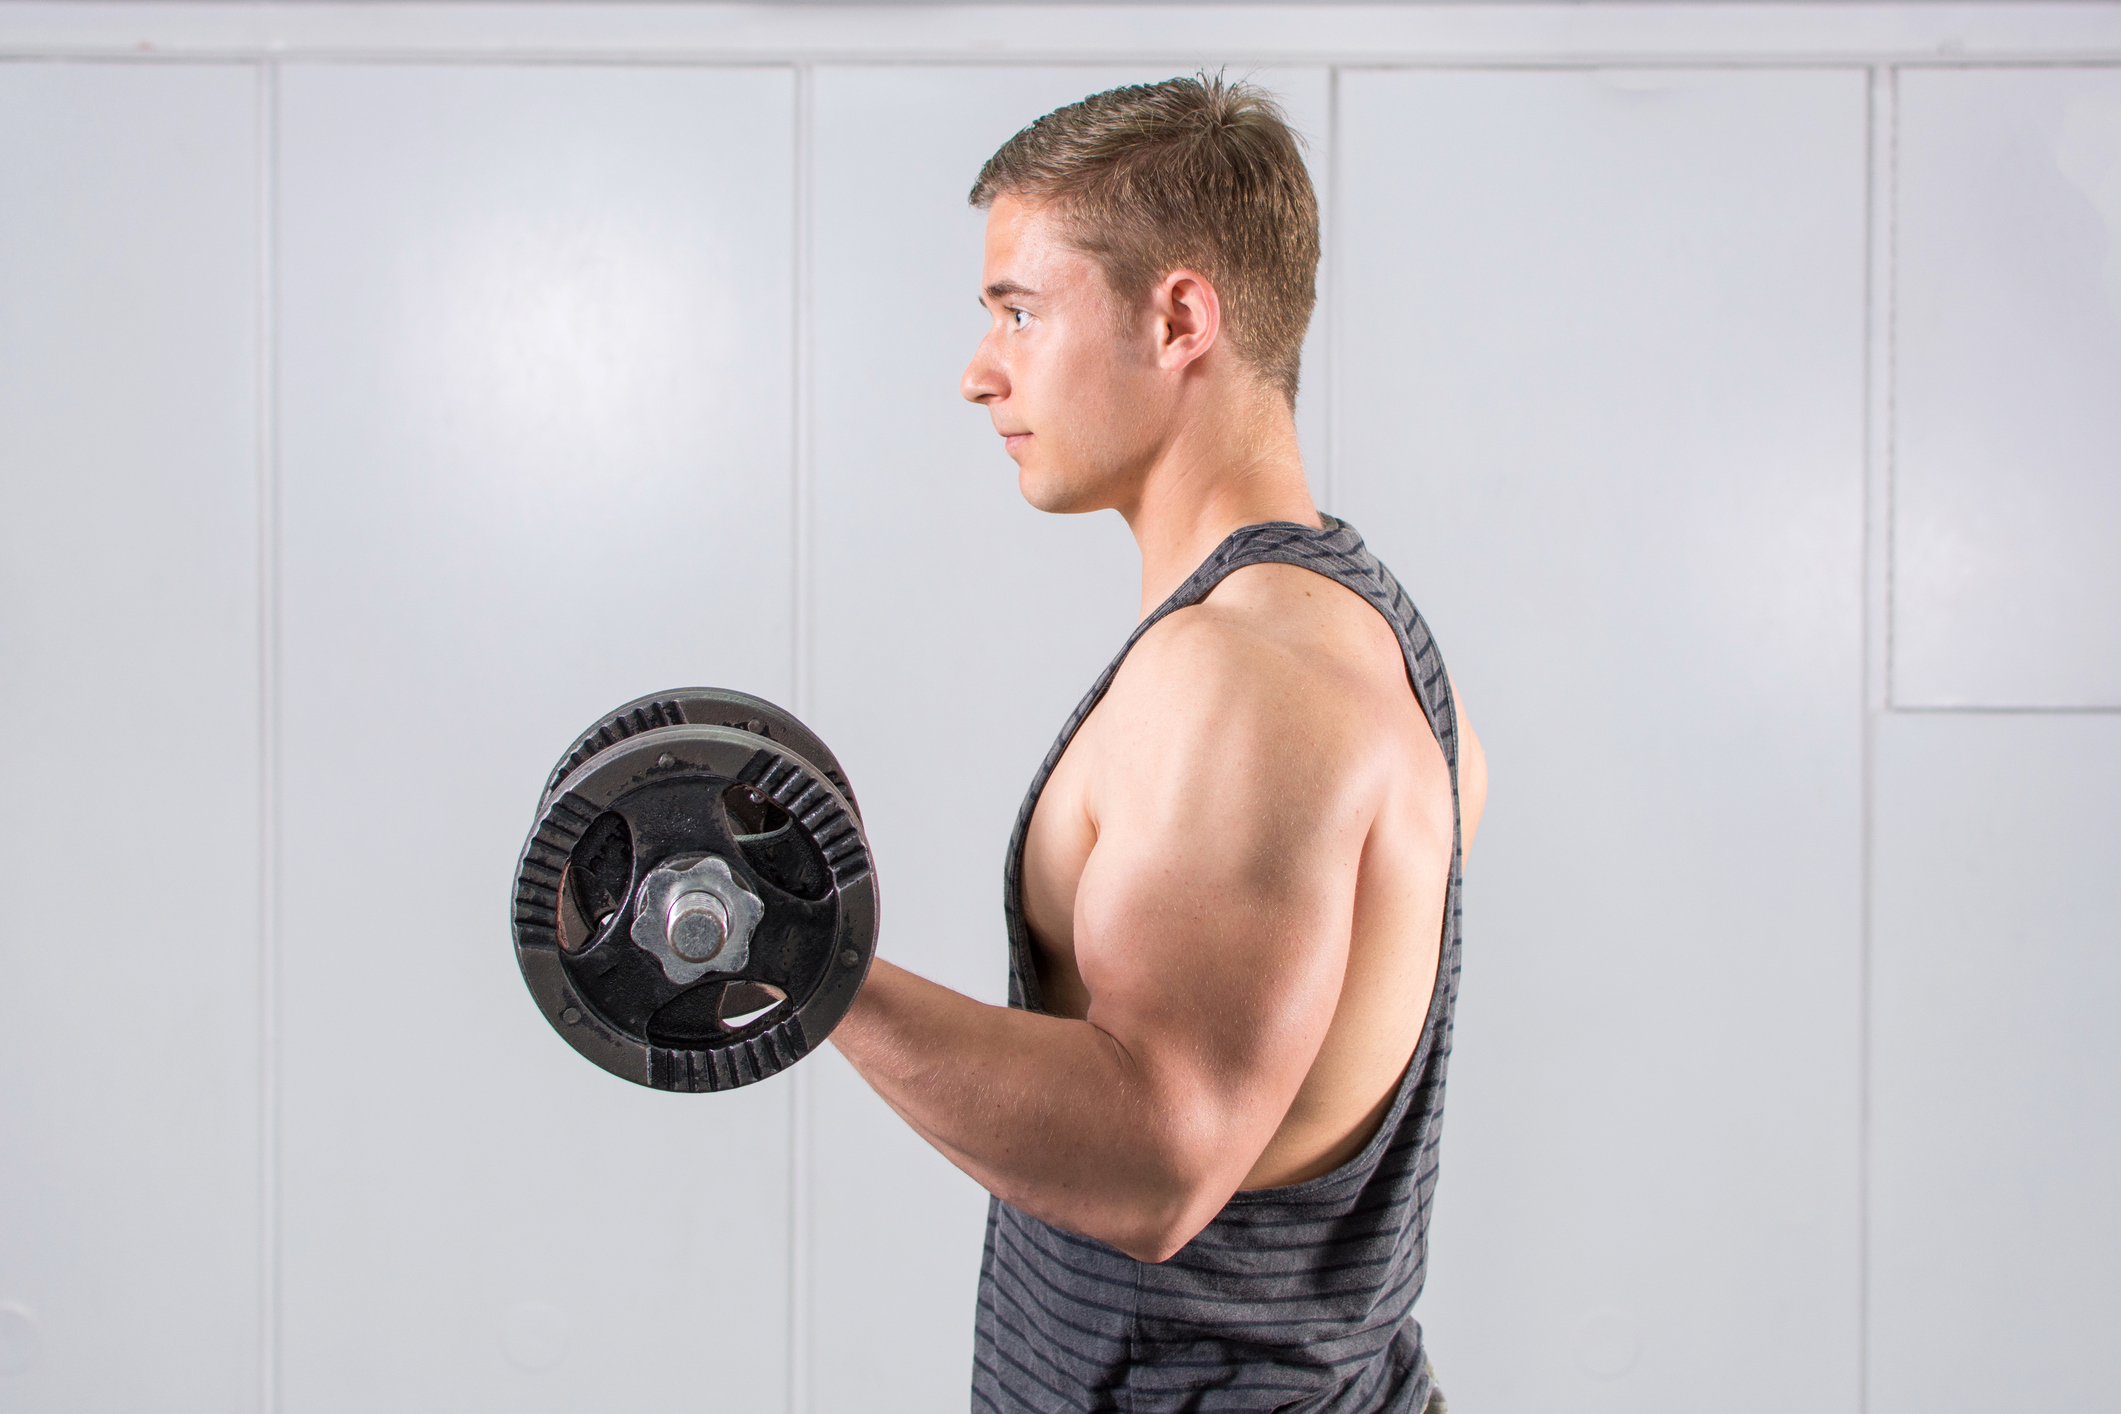 10 تمرین ورزشی برای عضلانی تر شدن بازو